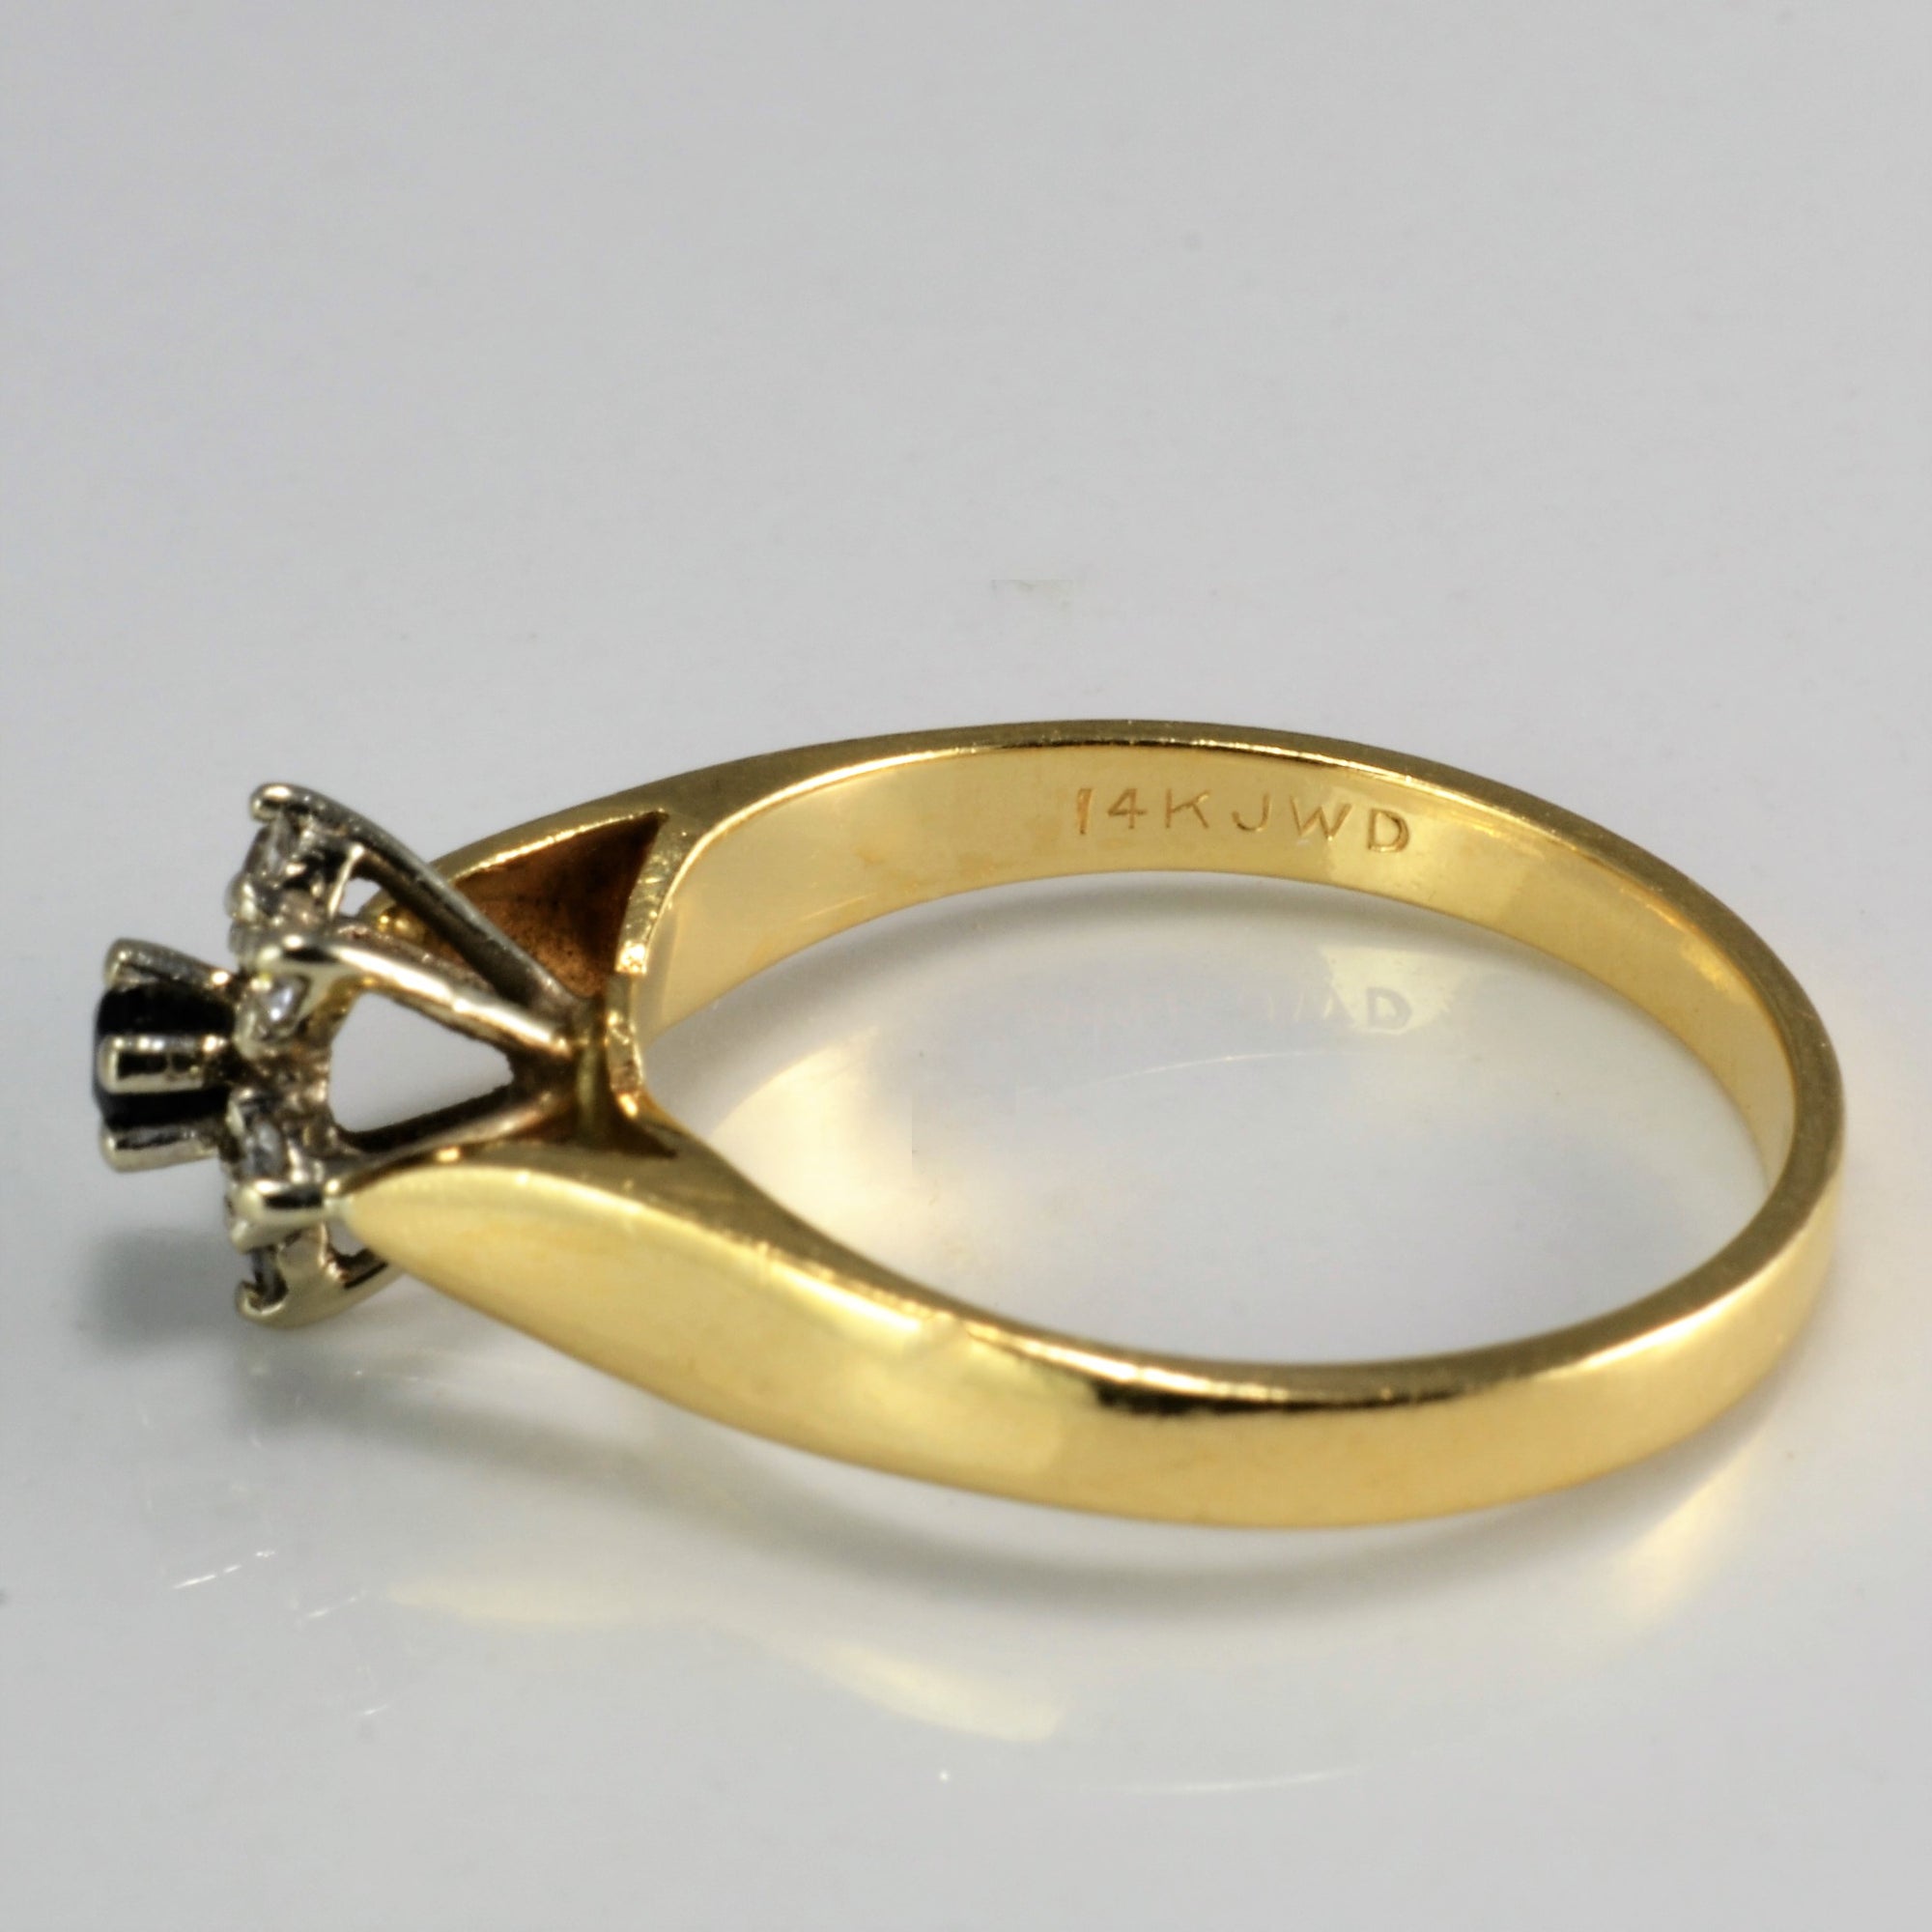 Cluster Diamond & Sapphire Ring | 0.06 ctw, SZ 5.75 |